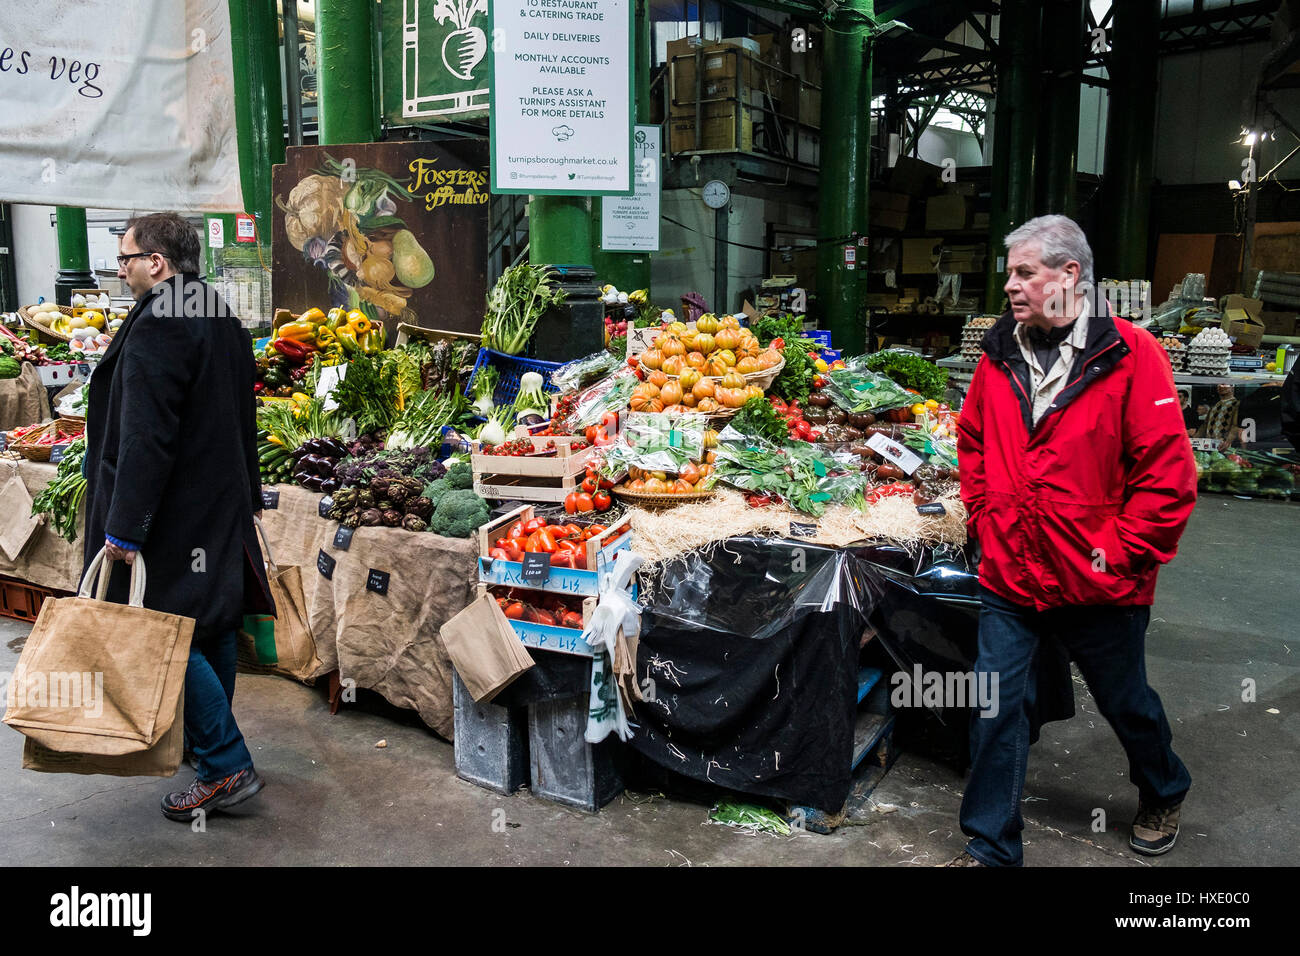 El mercado Borough Market Mostrar vegetales frescos alimentos saludables a los compradores clientes personas Foto de stock